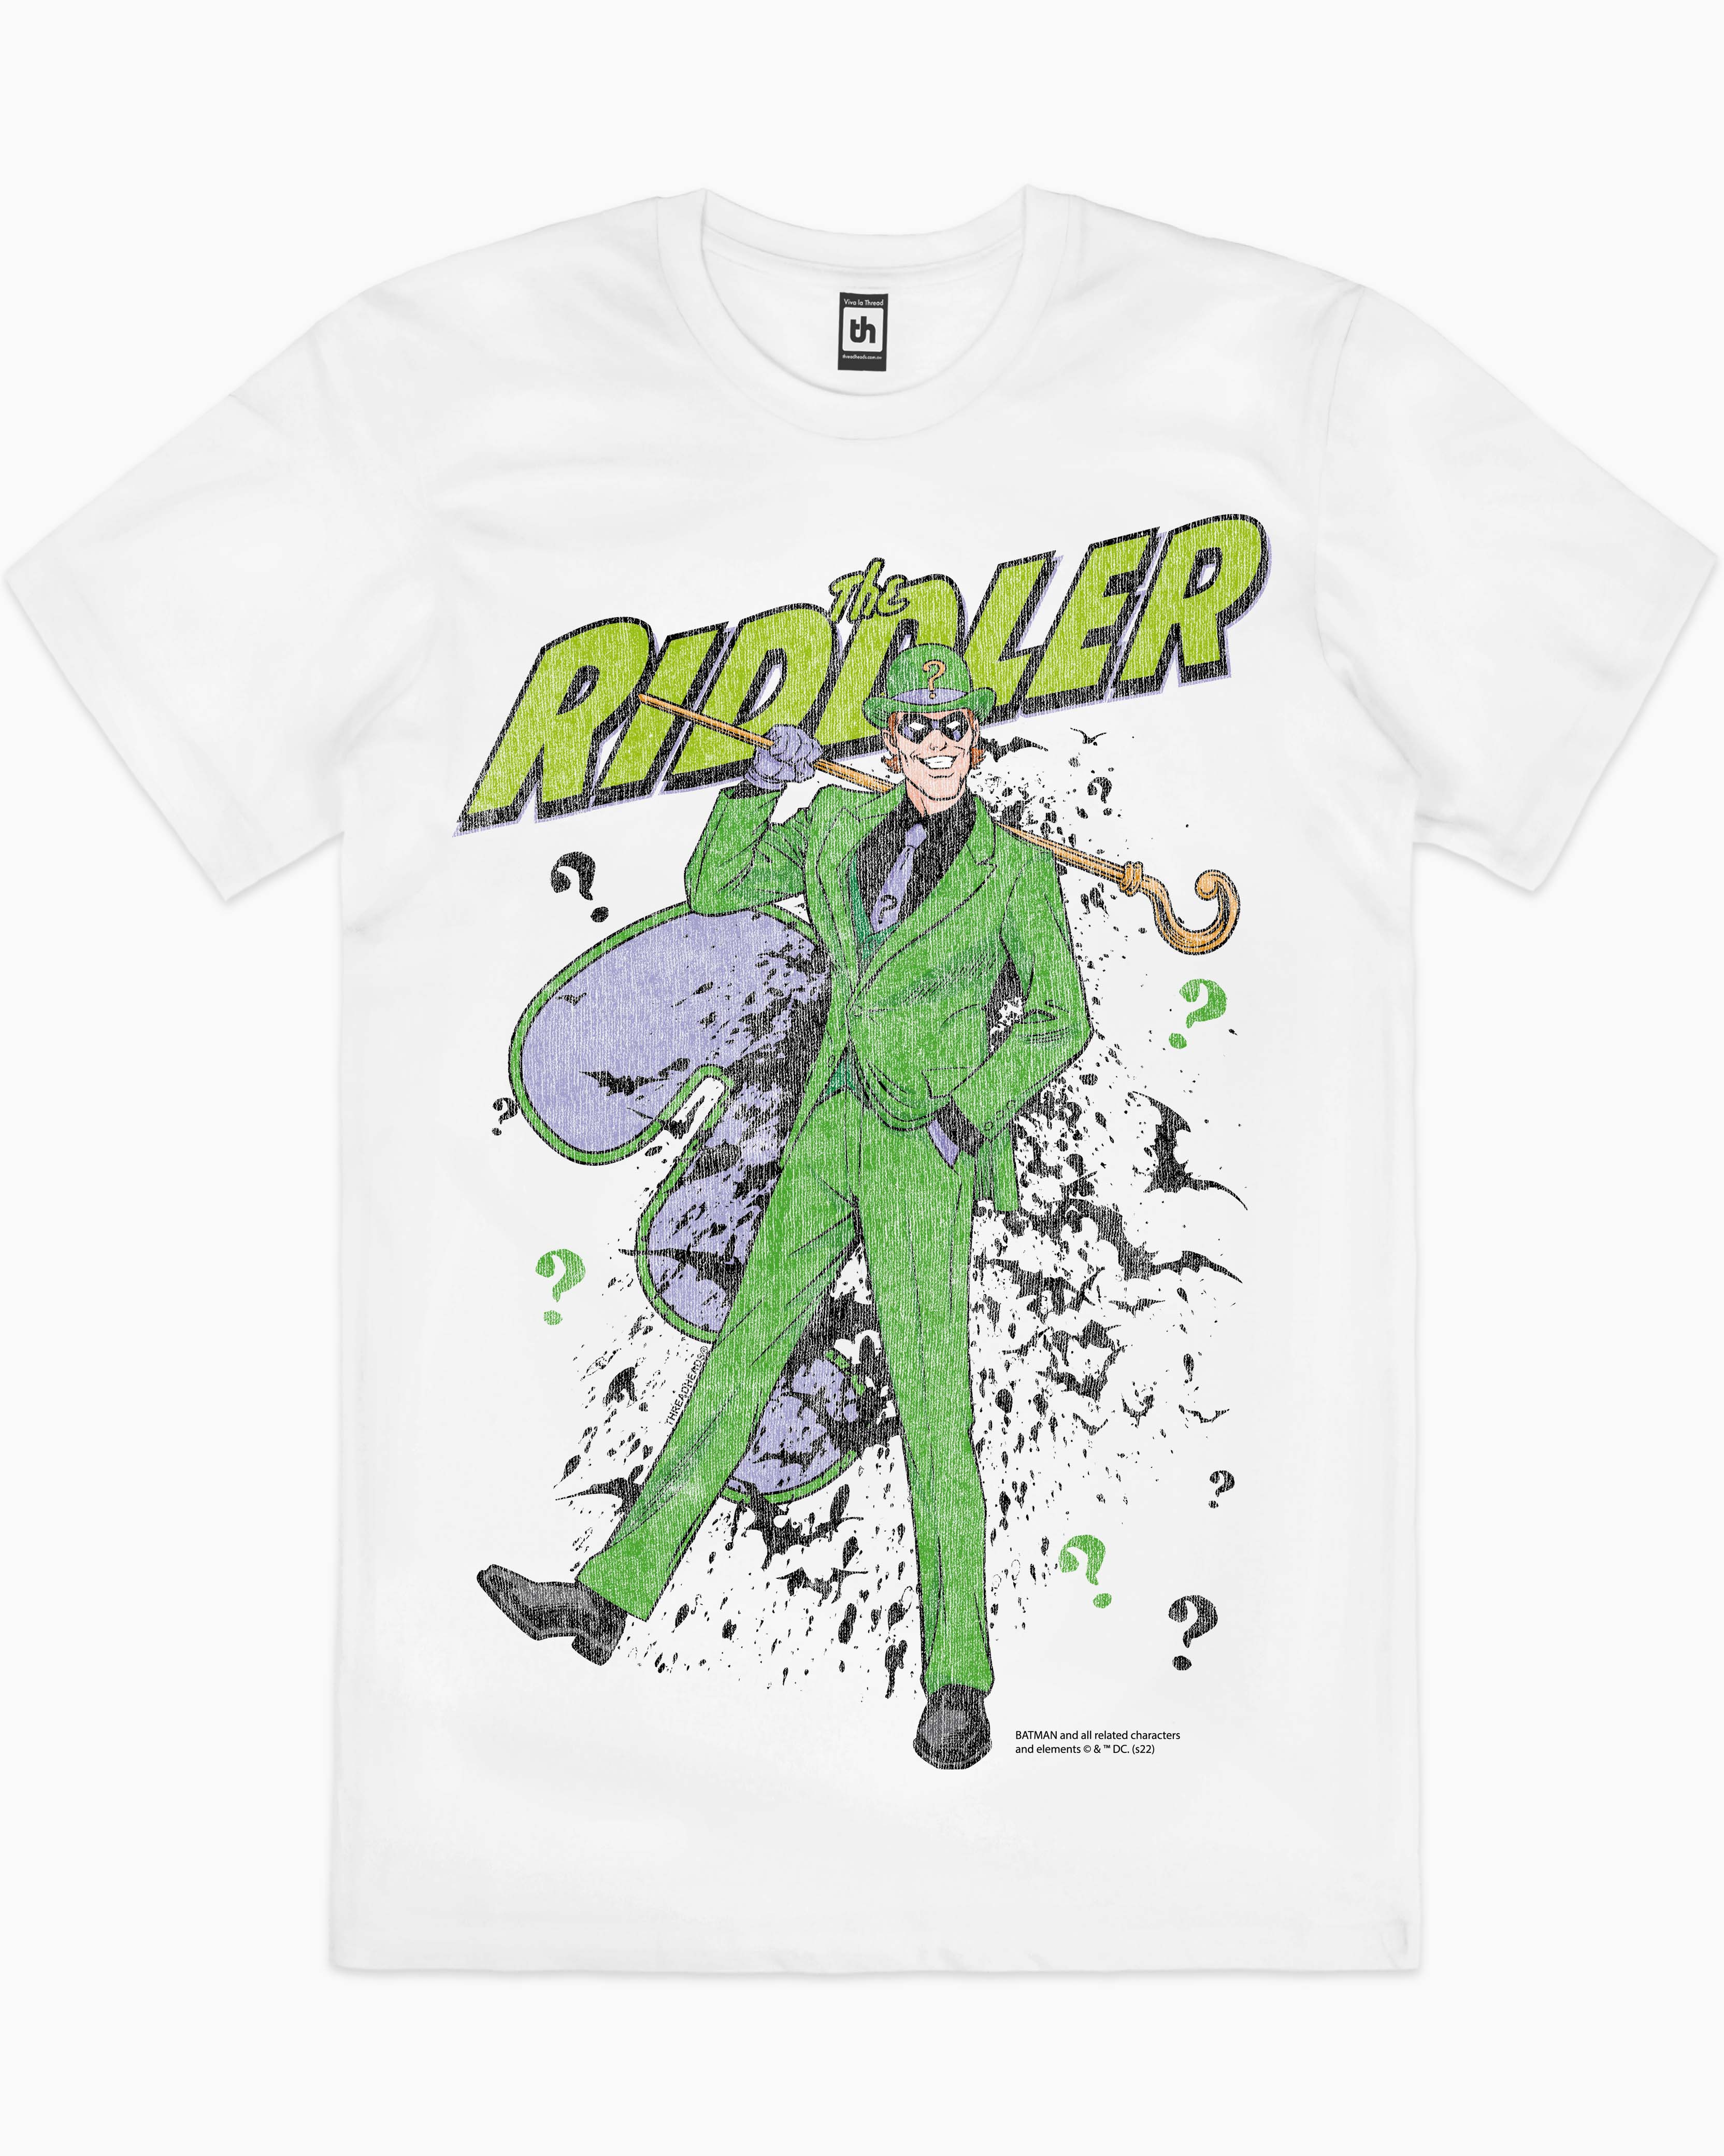 The Riddler T-Shirt